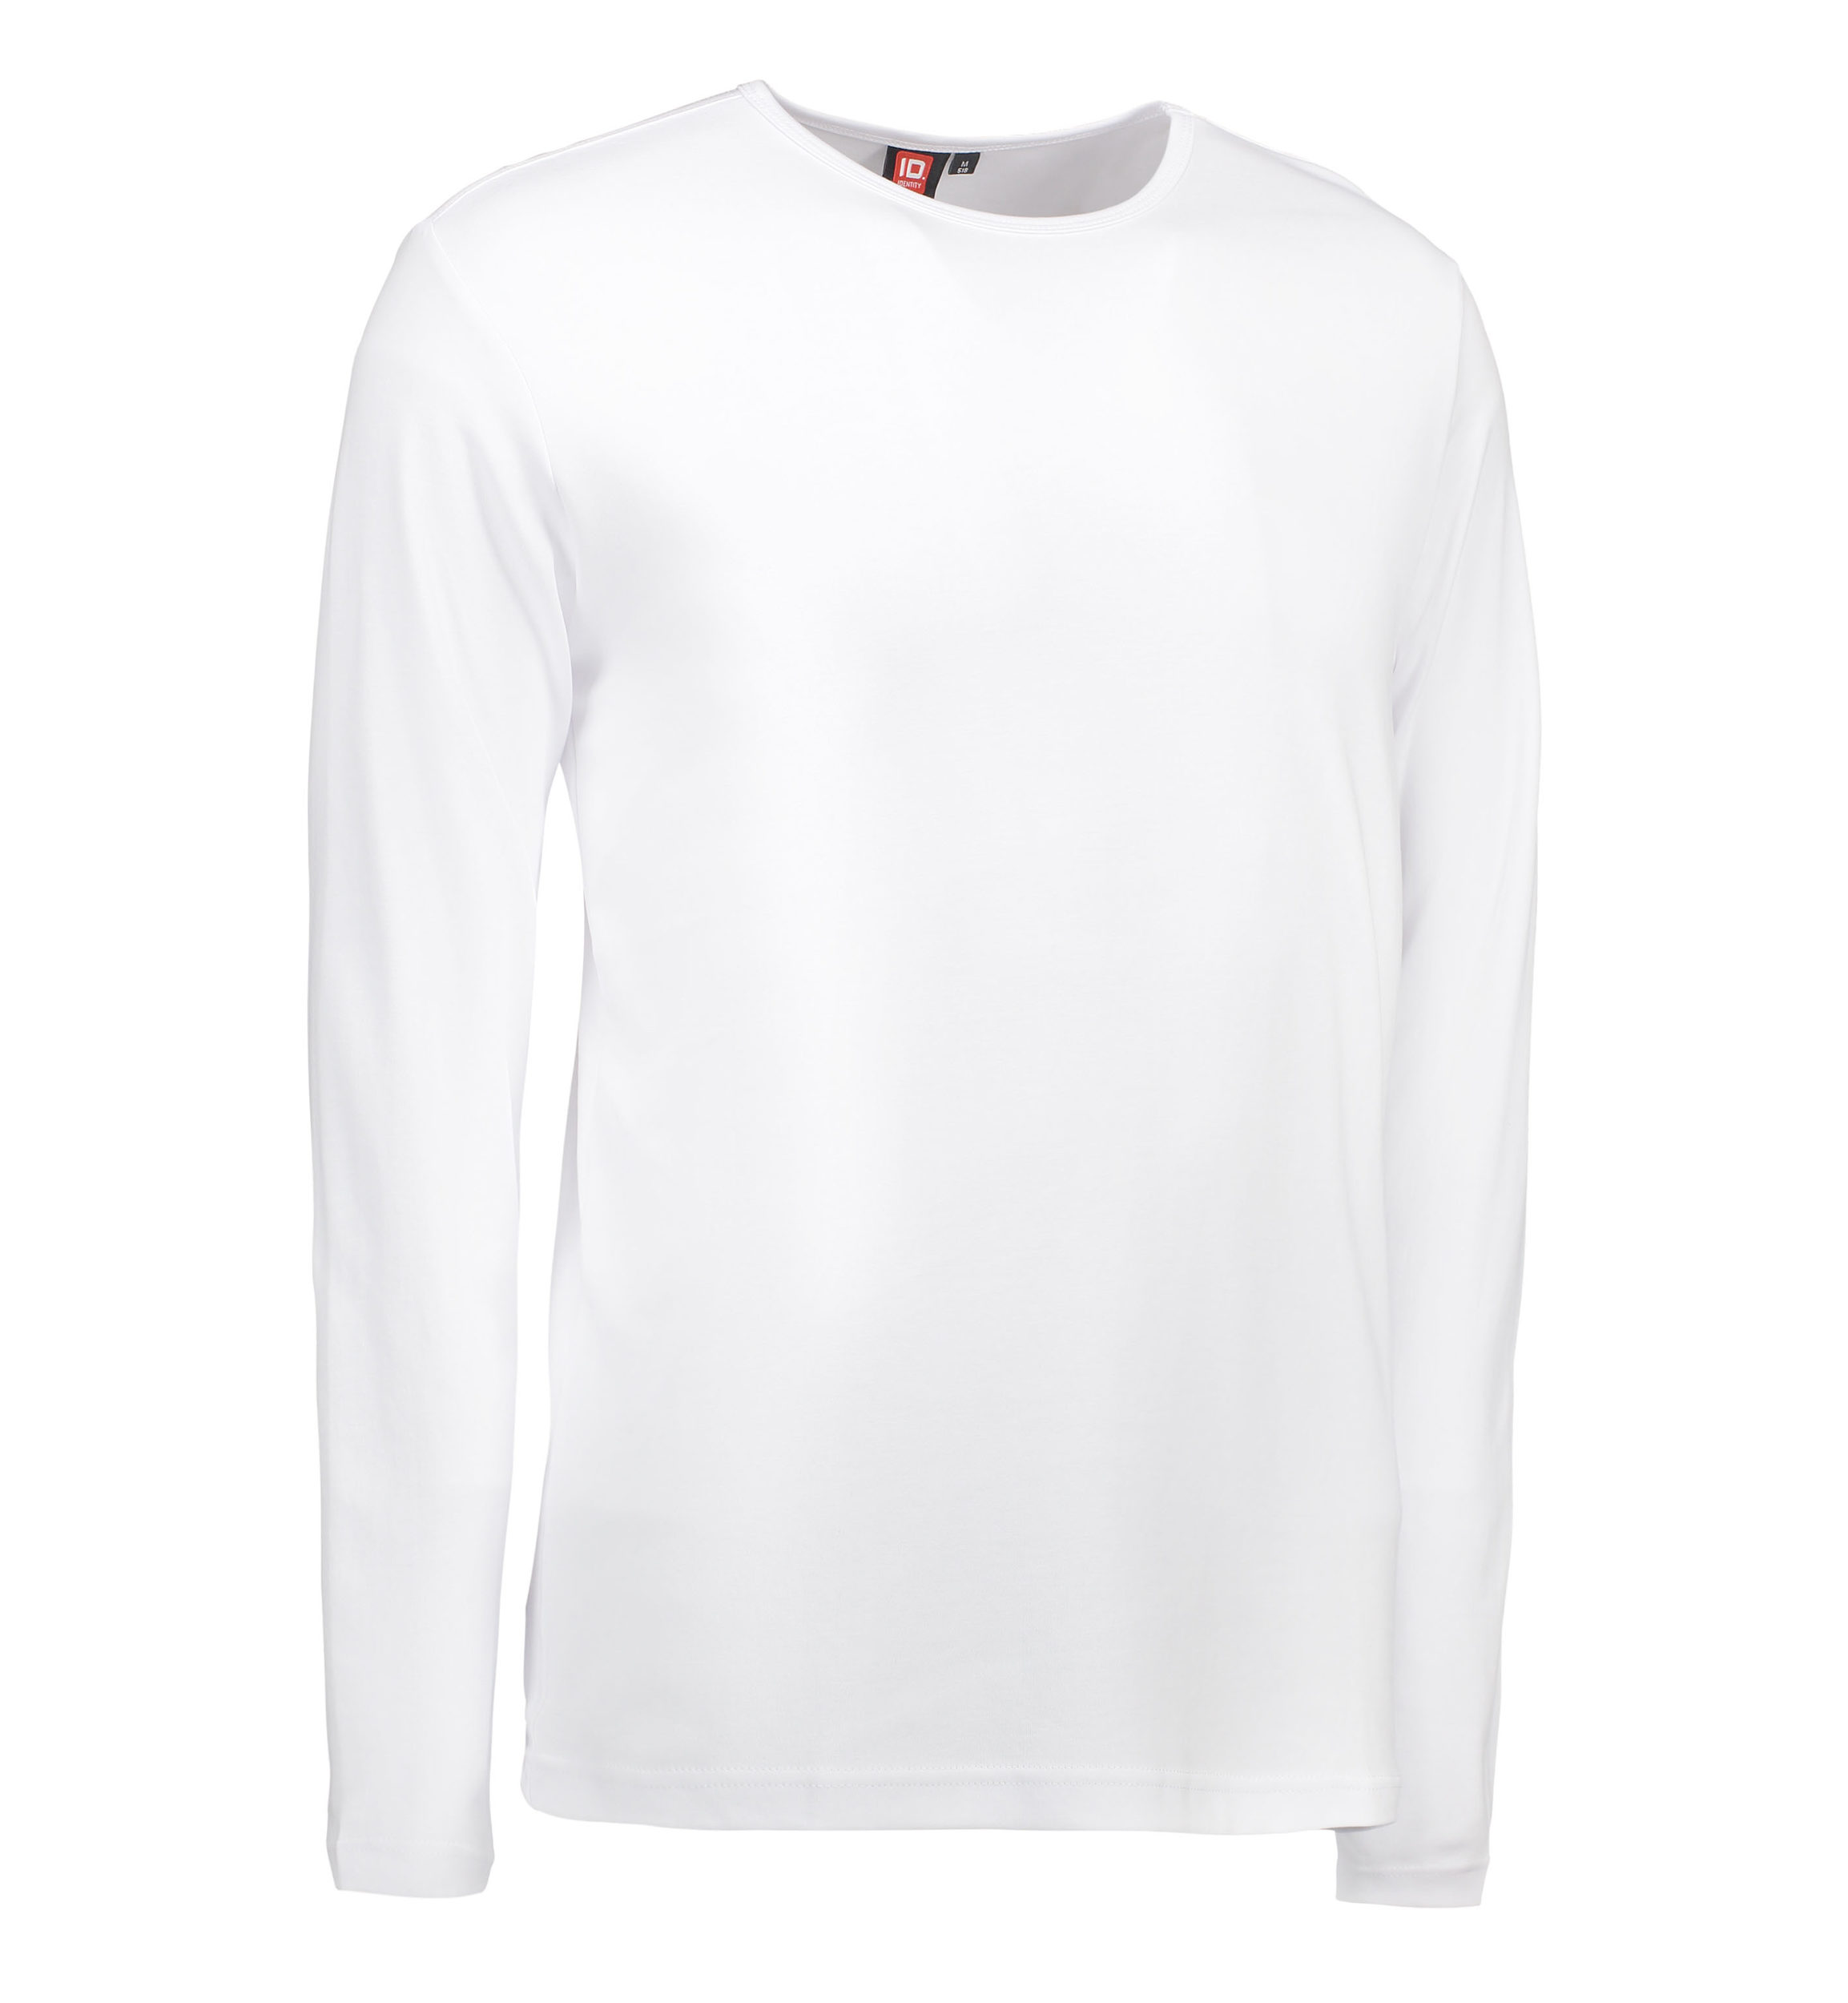 Billede af Hvid langærmet t-shirt til mænd - L hos Sygeplejebutikken.dk